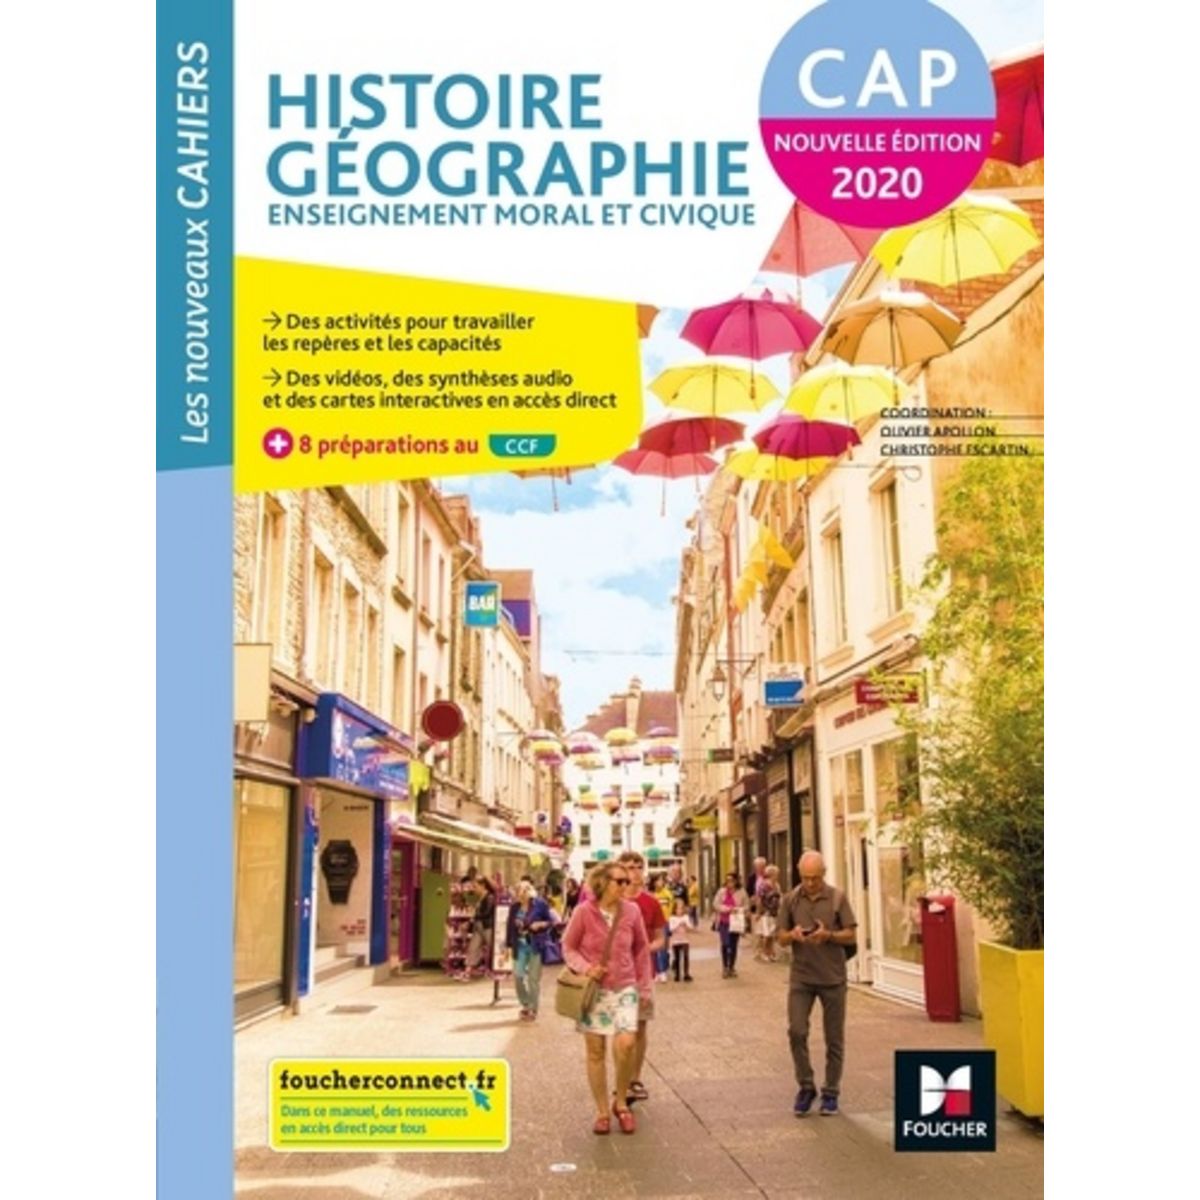 Histoire Geographie Enseignement Moral Et Civique Cap Les Nouveaux Cahiers Edition 2020 1366